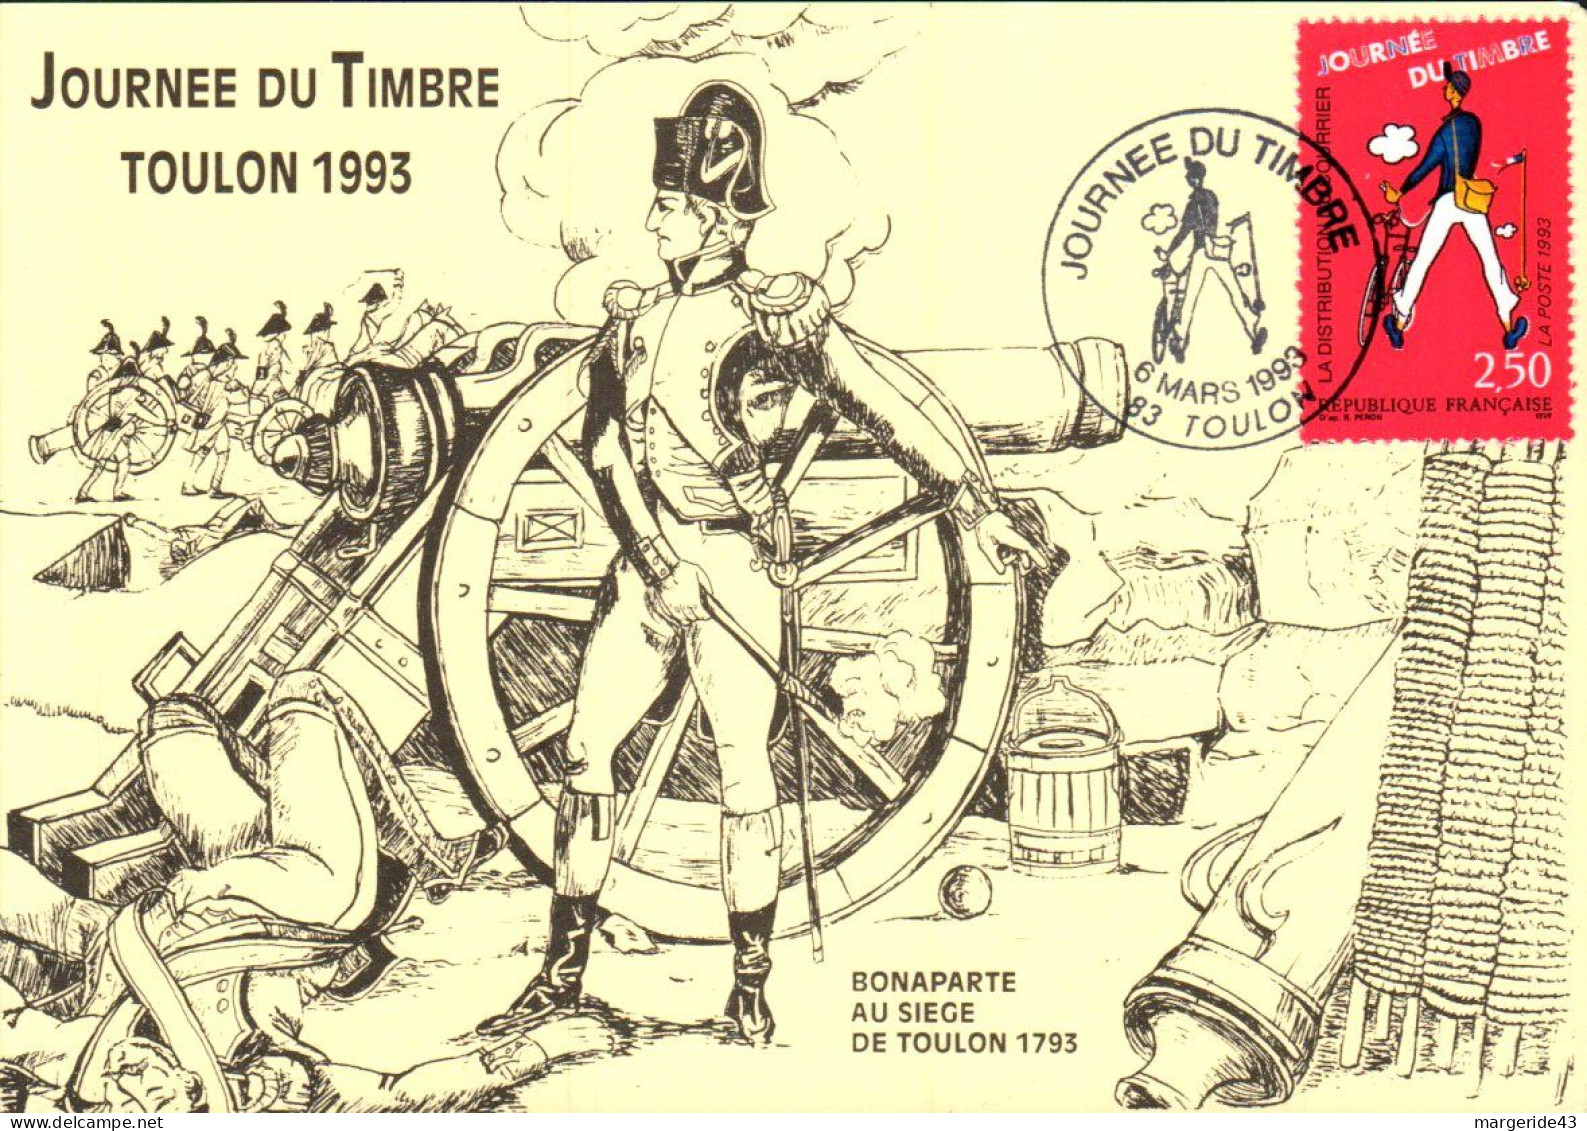 JOURNEE DU TIMBRE 1993 BONAPARTE AU SIEGE DE TOULON - Cachets Commémoratifs